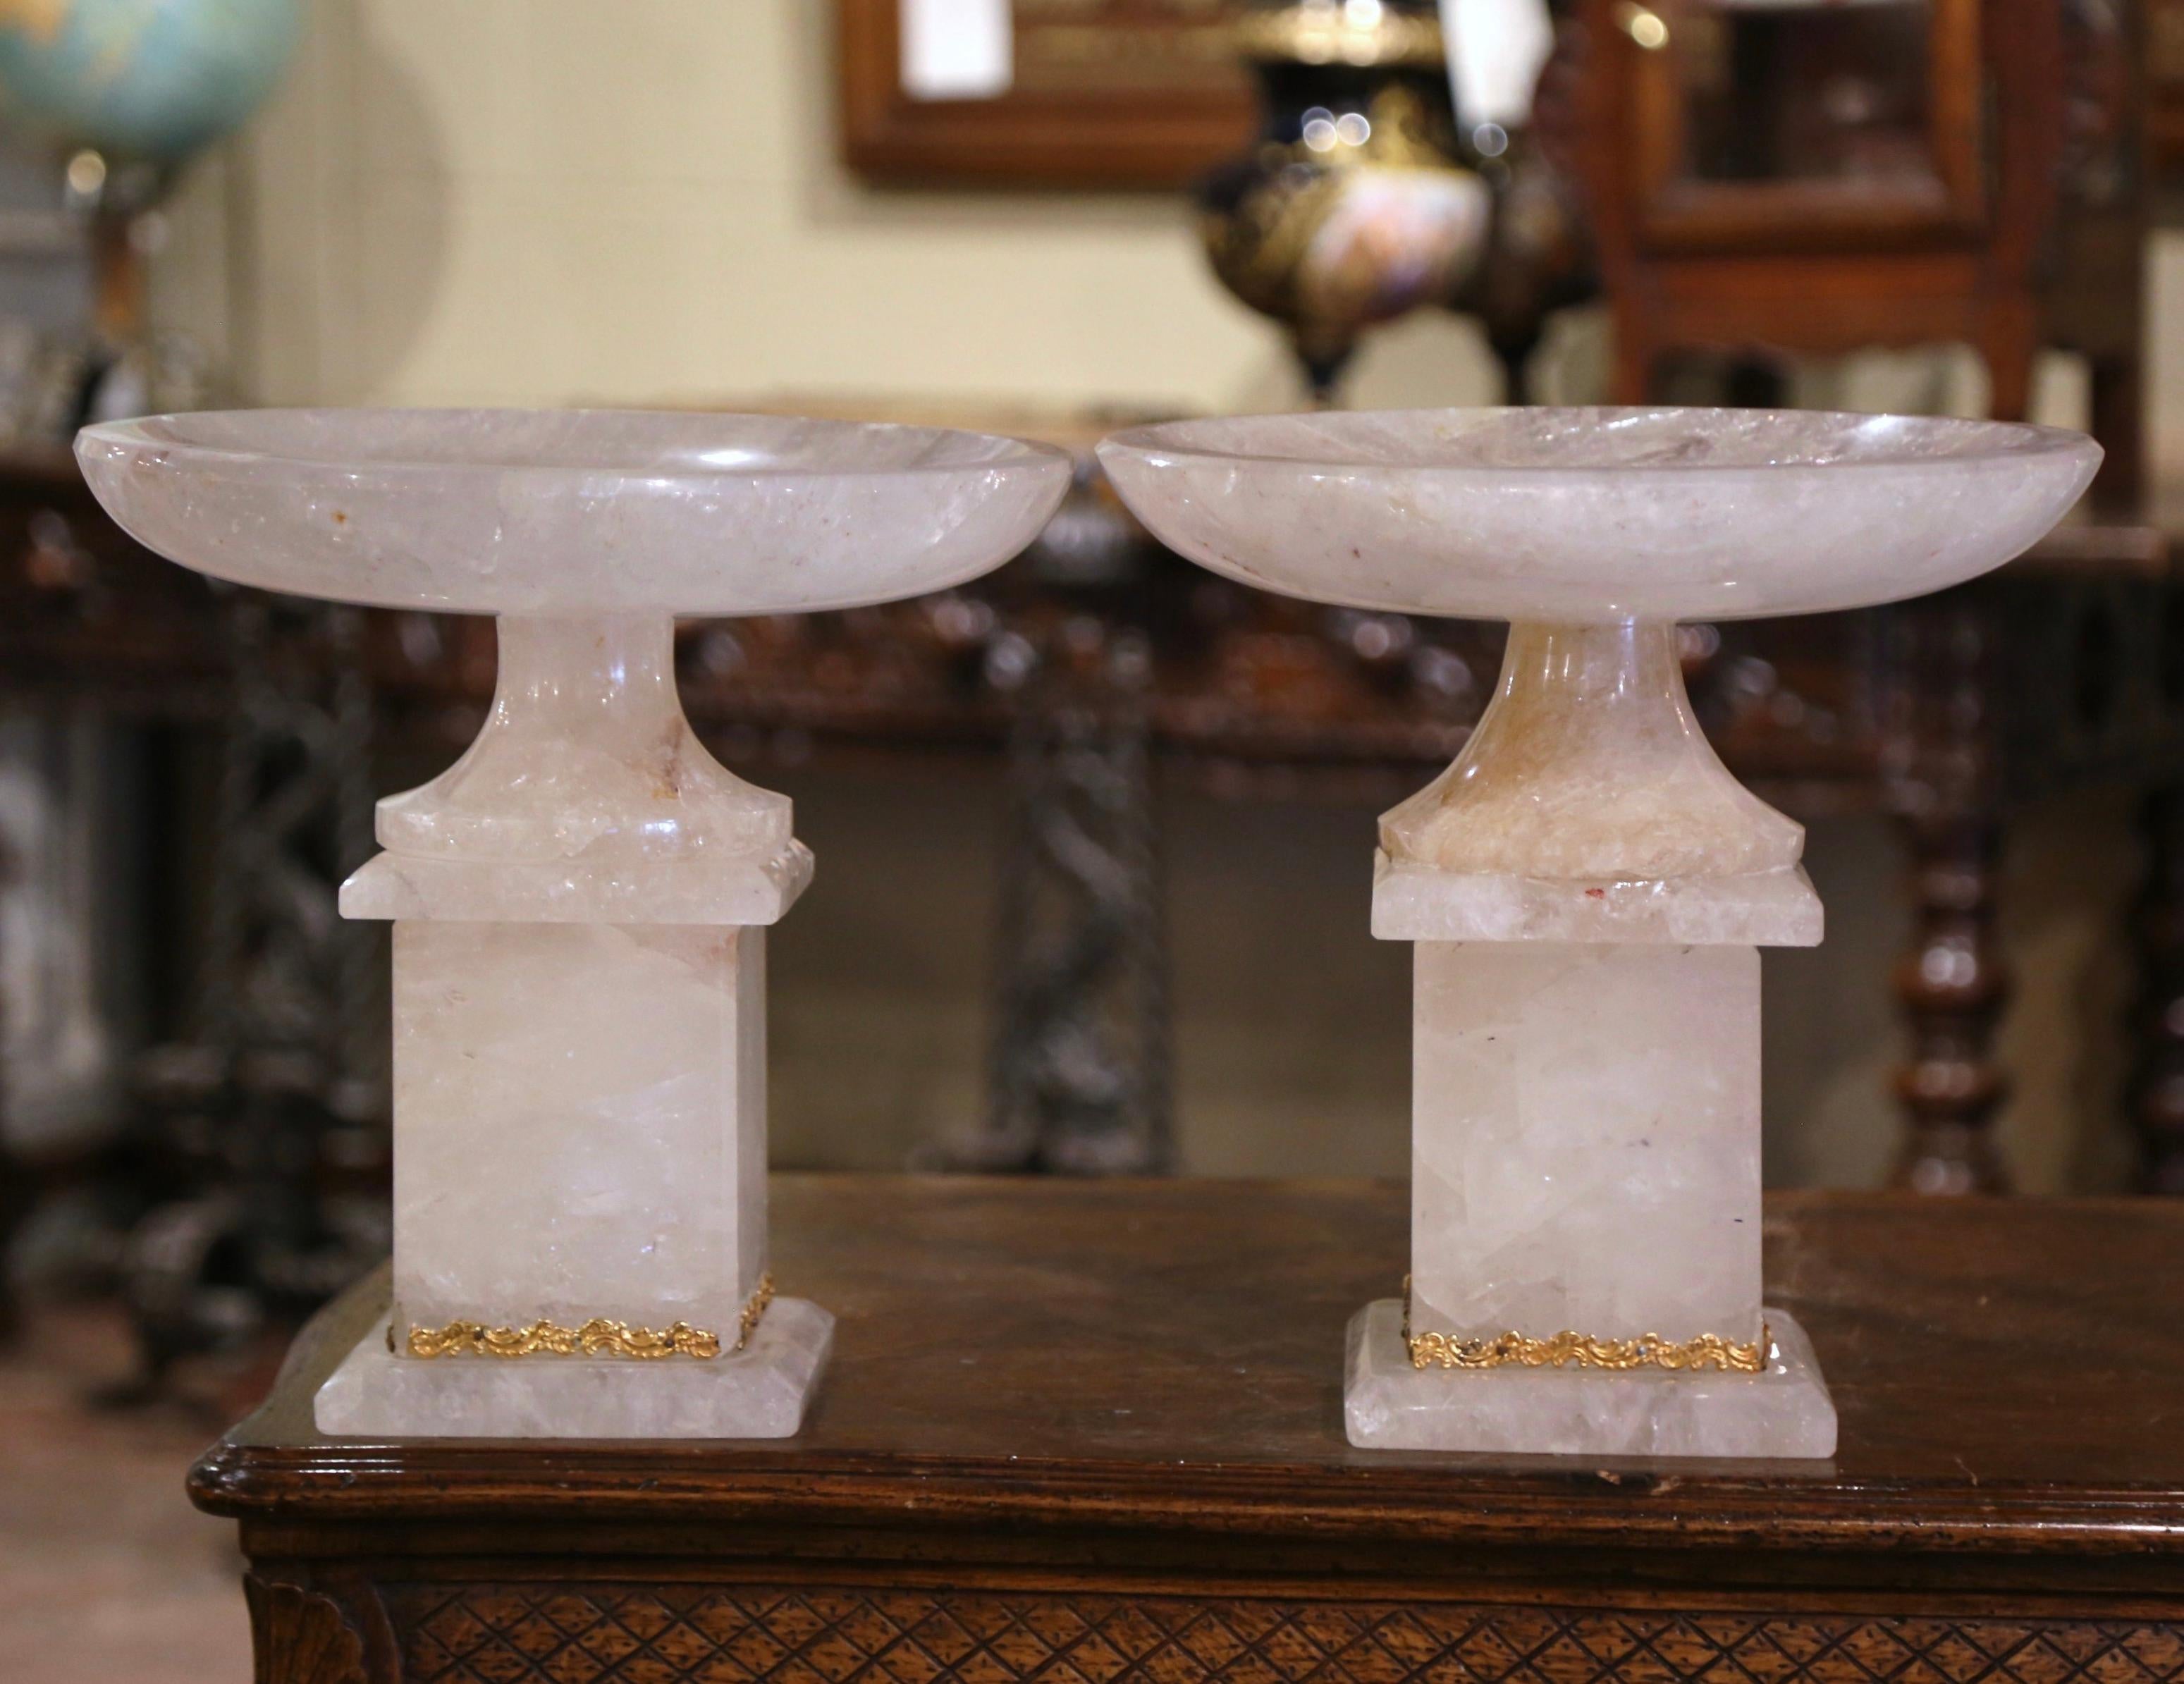 Ces importants bols en cristal de roche sculptés à la main sur pied ont été fabriqués au Brésil. Construite en deux parties, la compote repose sur une base carrée décorée d'une bande de laiton fixée à la base, au-dessus d'un bol circulaire pivotant